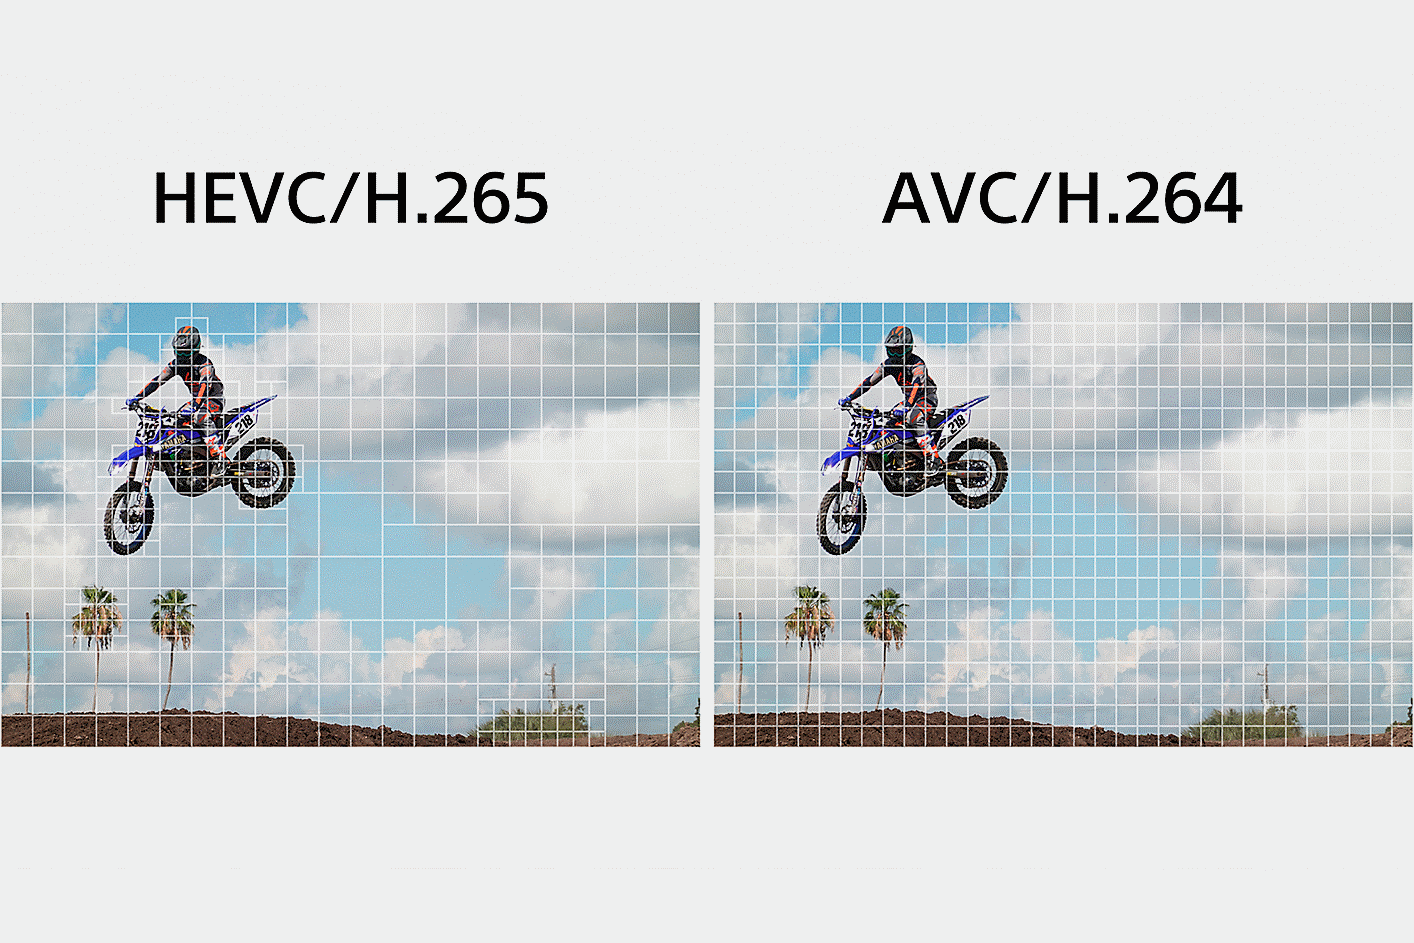 ซ้าย: ภาพประกอบของ HEVC/H.265 แบ่งส่วนที่ซับซ้อนของคลิปออกเป็นส่วนๆ ที่ละเอียดกว่าเพื่อประมวลผลข้อมูล ขวา: ภาพประกอบของ AVC/H.264 แบ่งภาพวิดีโอทั้งหมดออกเท่าๆ กันเพื่อประมวลผลข้อมูล